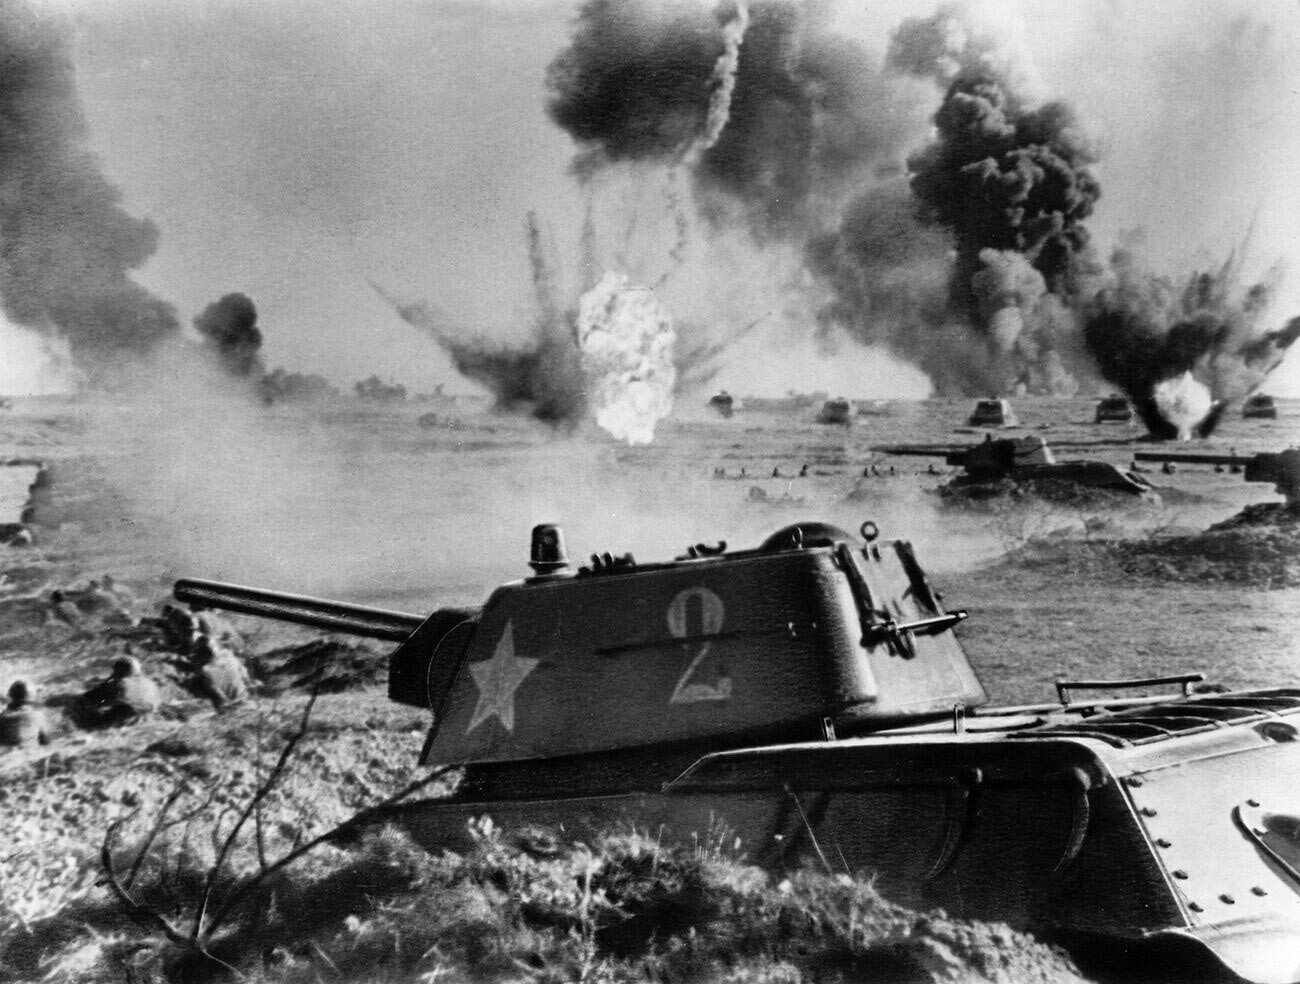 Battaglia di Stalingrado, un carro armato sovietico T-34 in azione, nel 1942 o 1943